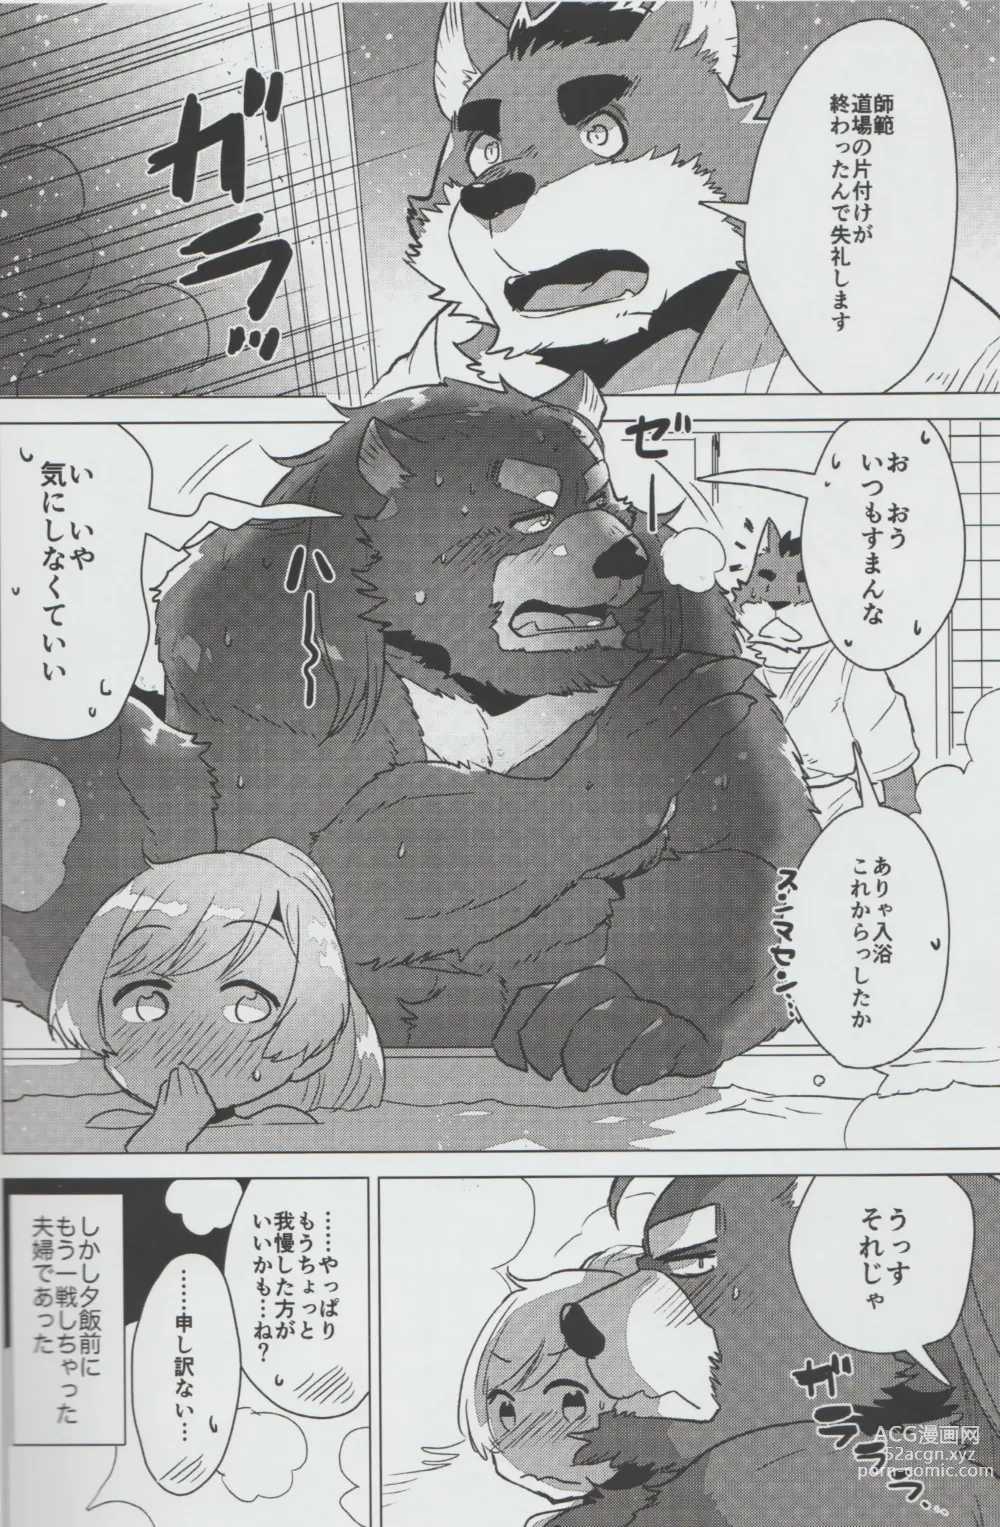 Page 17 of doujinshi Mihoshi Ginza Shopping Street Kaihoushi vol. 04